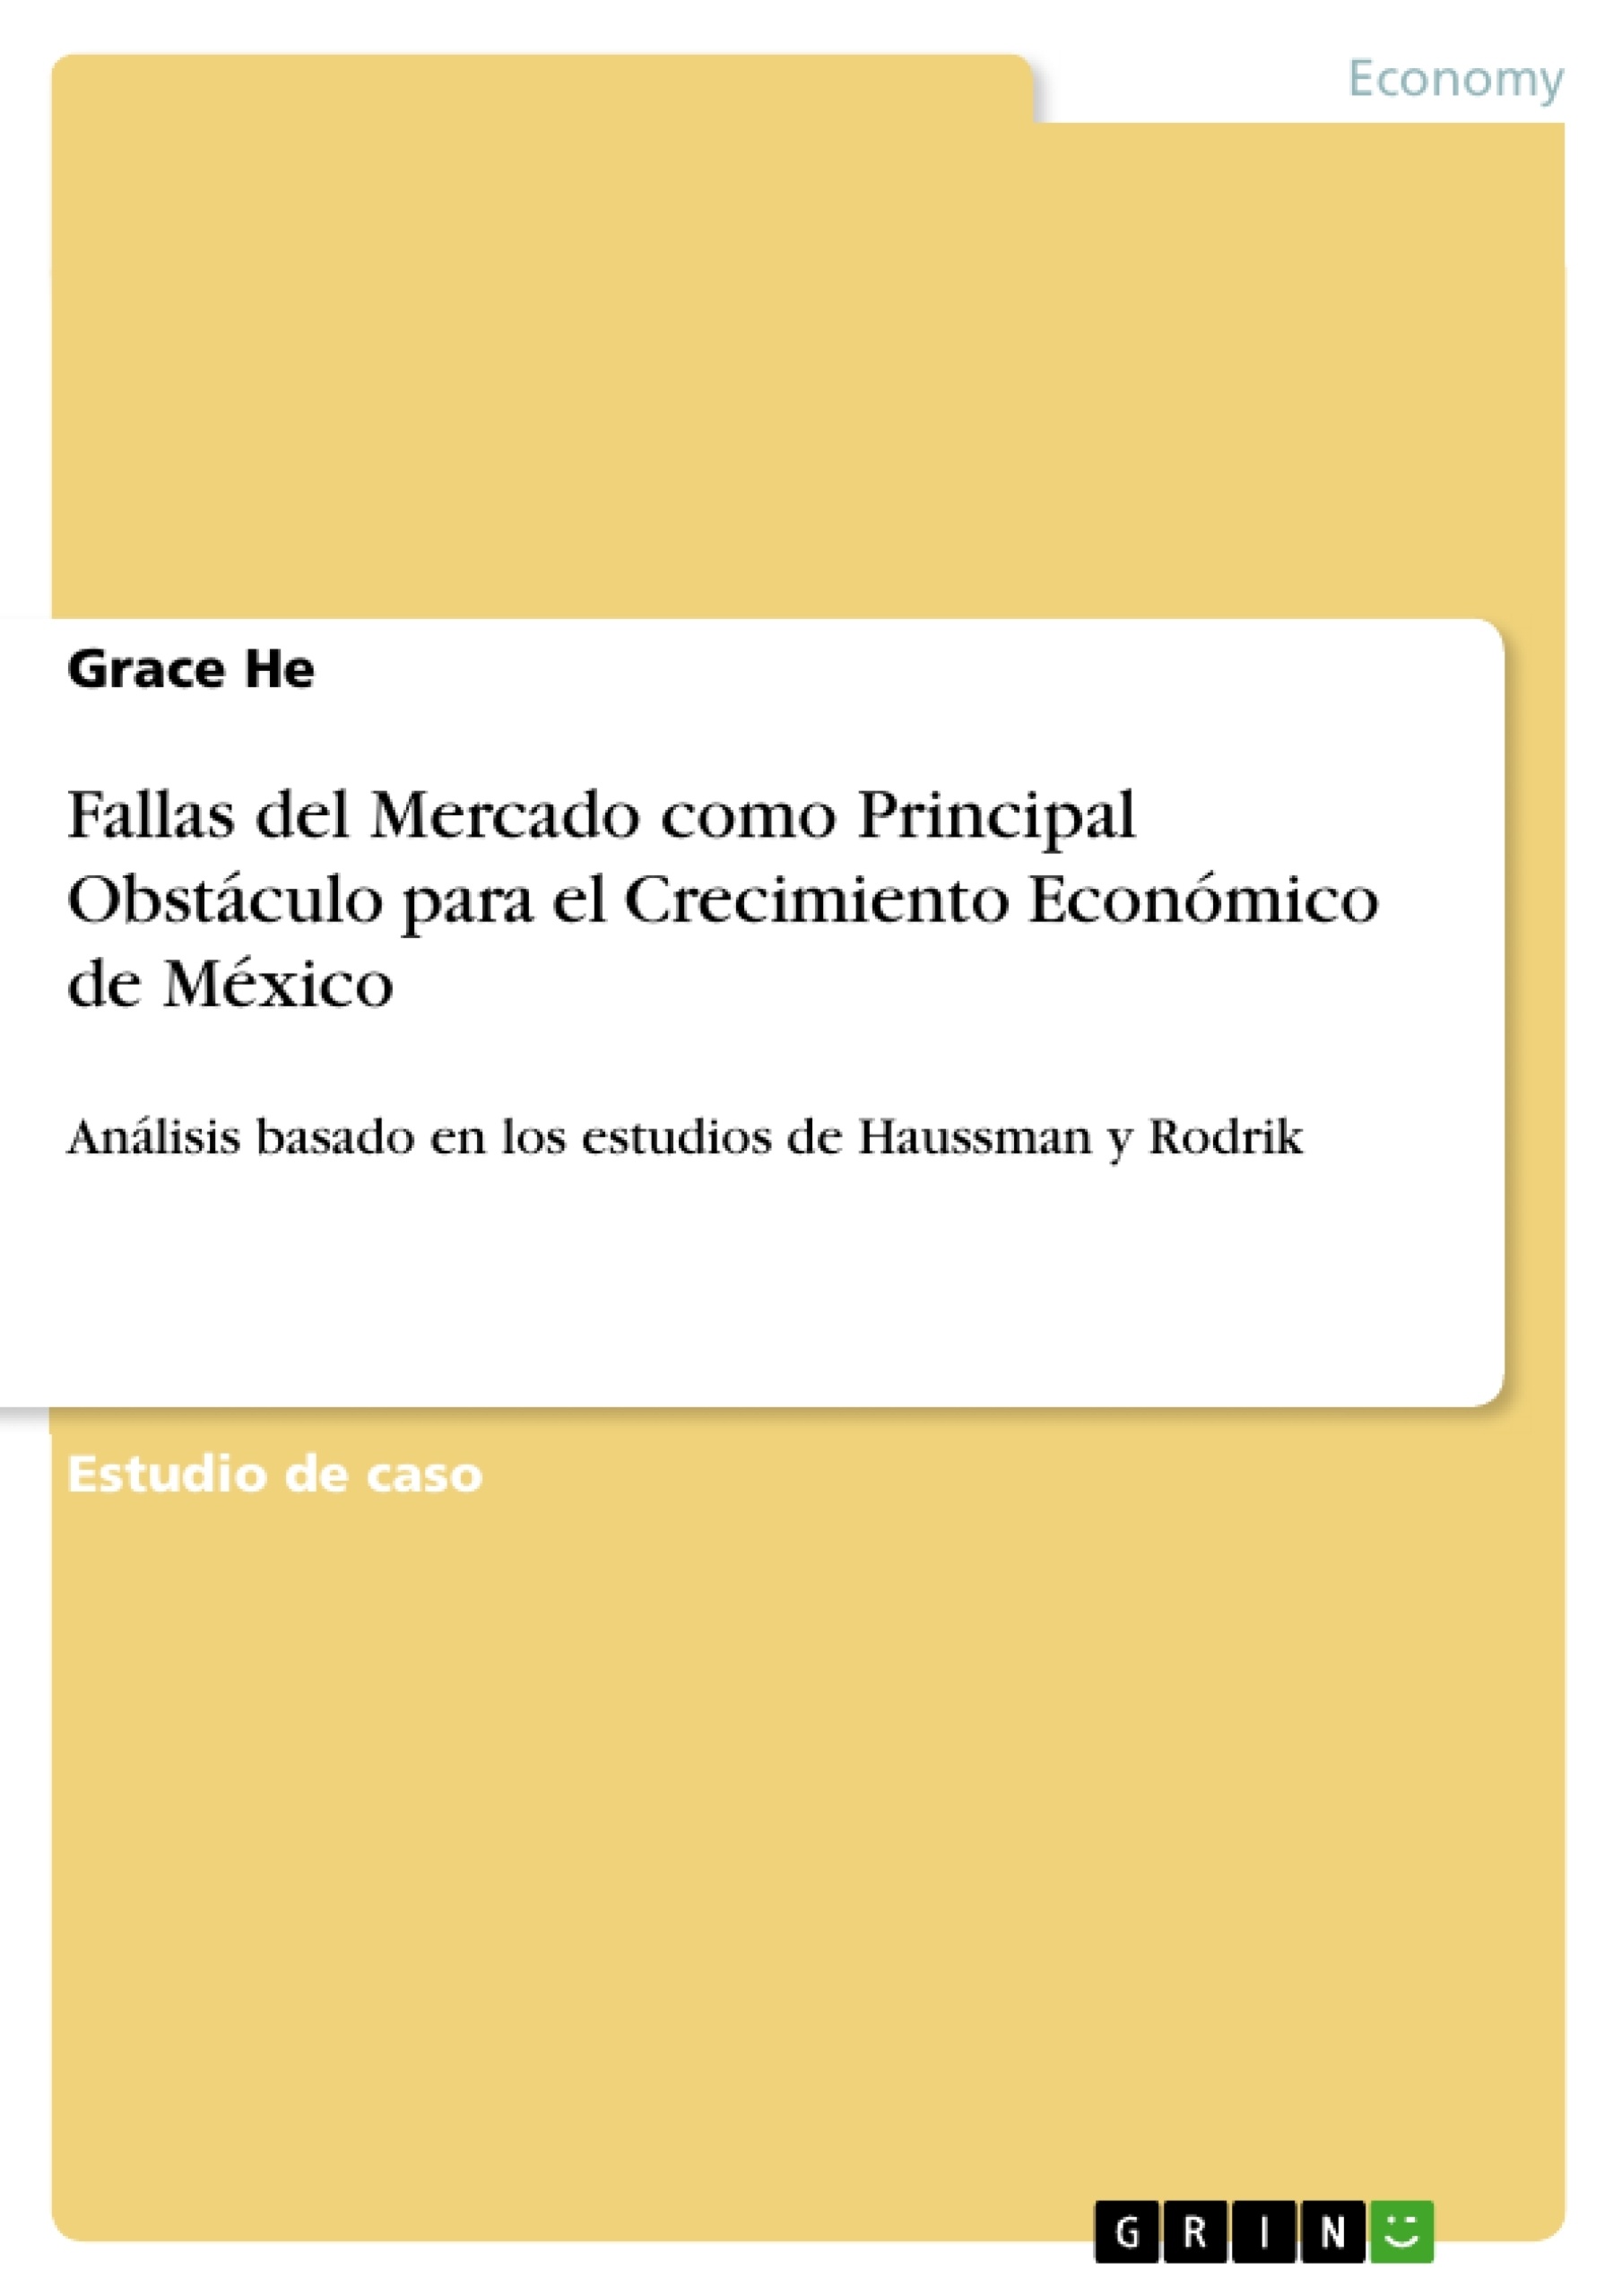 Titre: Fallas del Mercado como Principal Obstáculo para el Crecimiento Económico de México